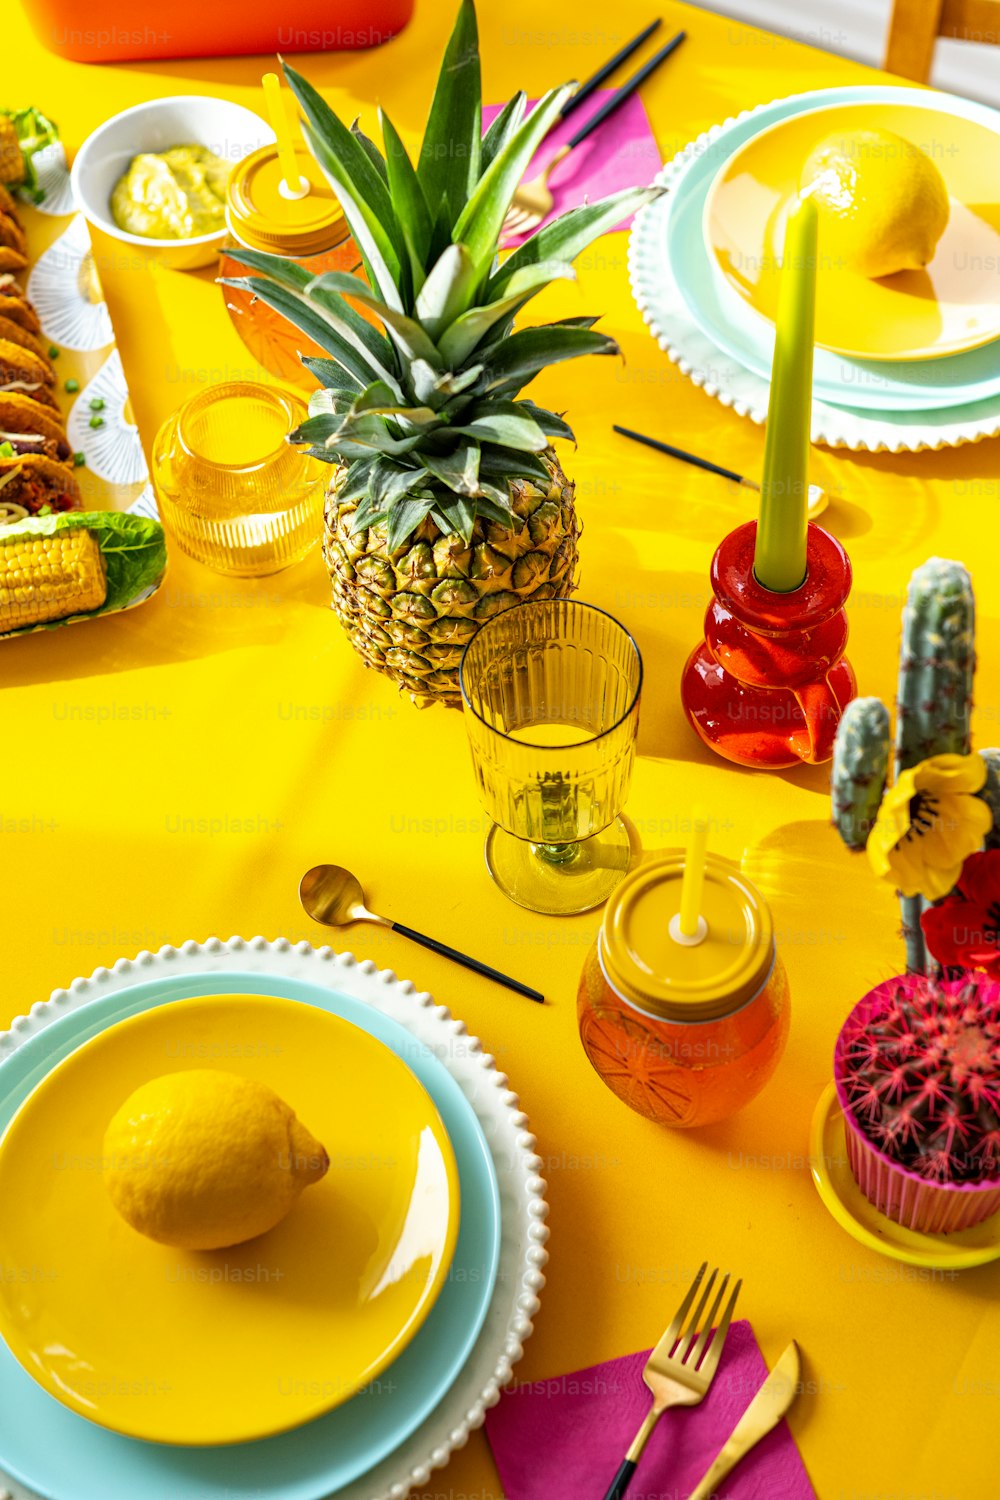 パイナップルが黄色いテーブルクロスの上に座っています